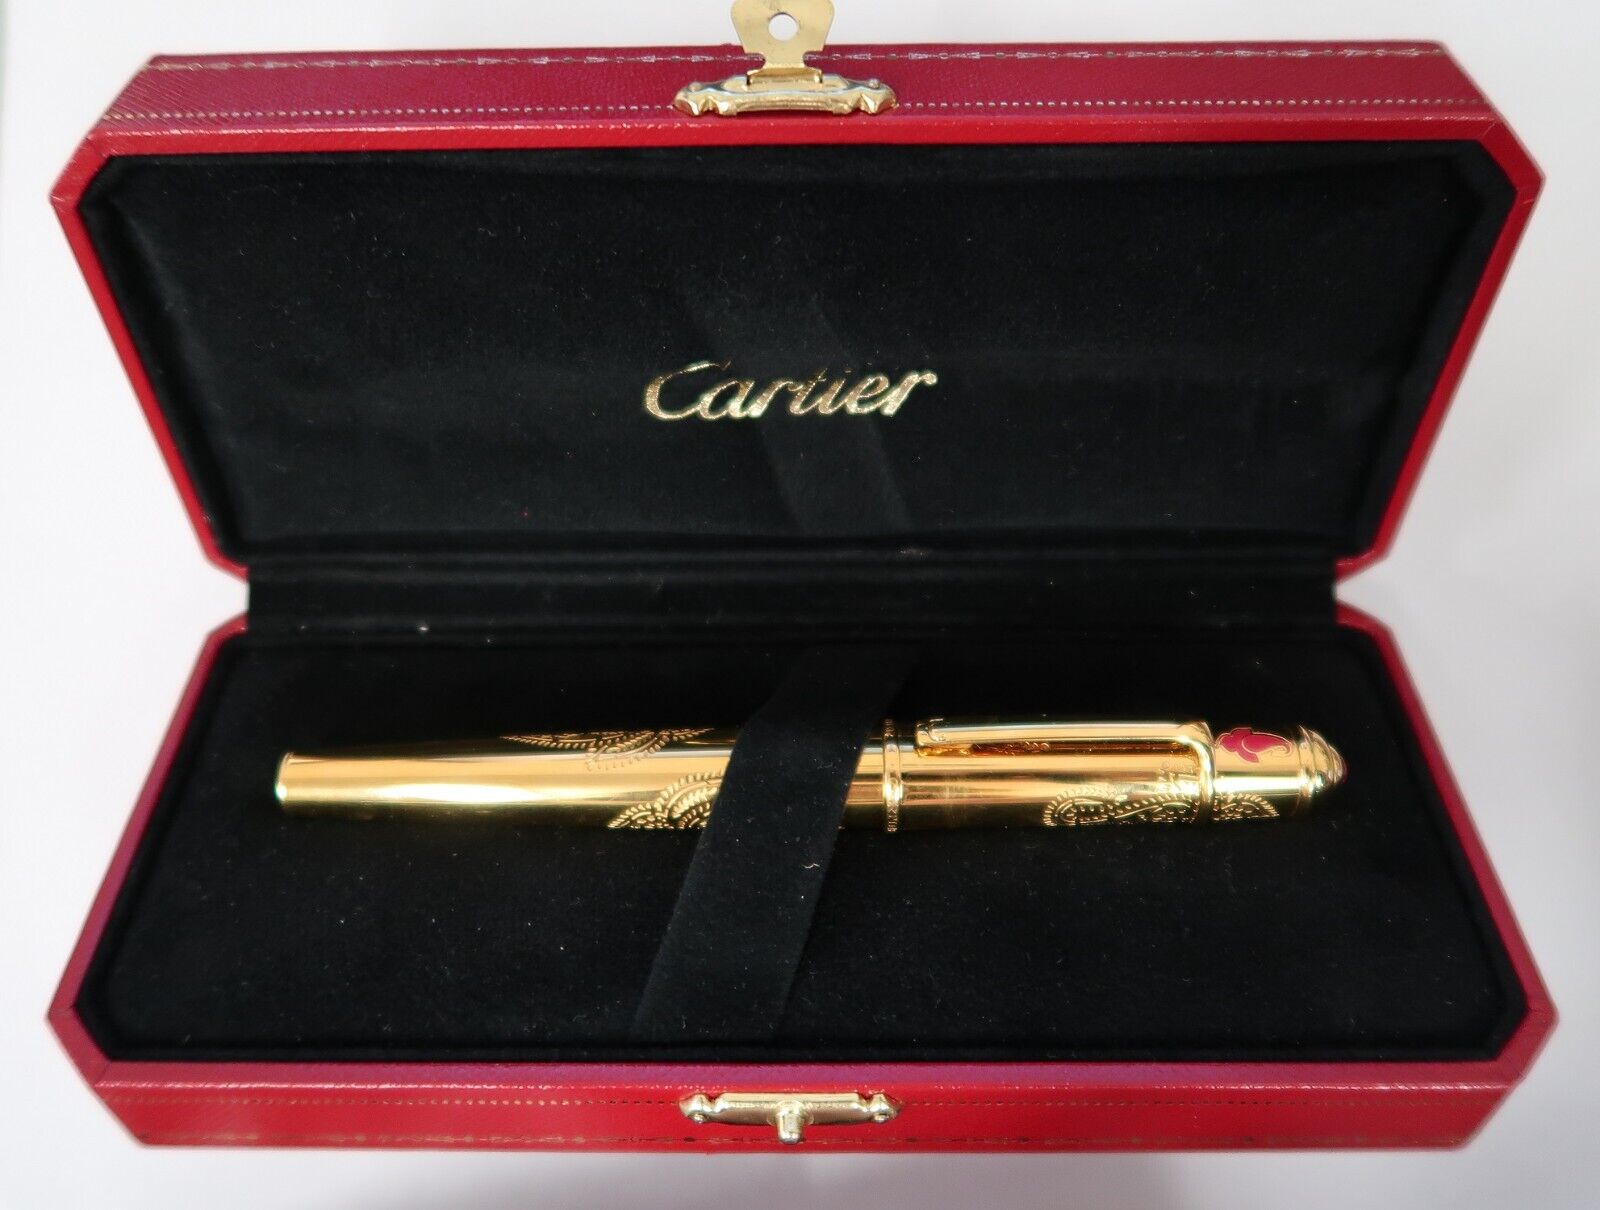 Diabolo De Cartier Indian Inspiration Motif Rollerball Pen Sp Edition New In Box